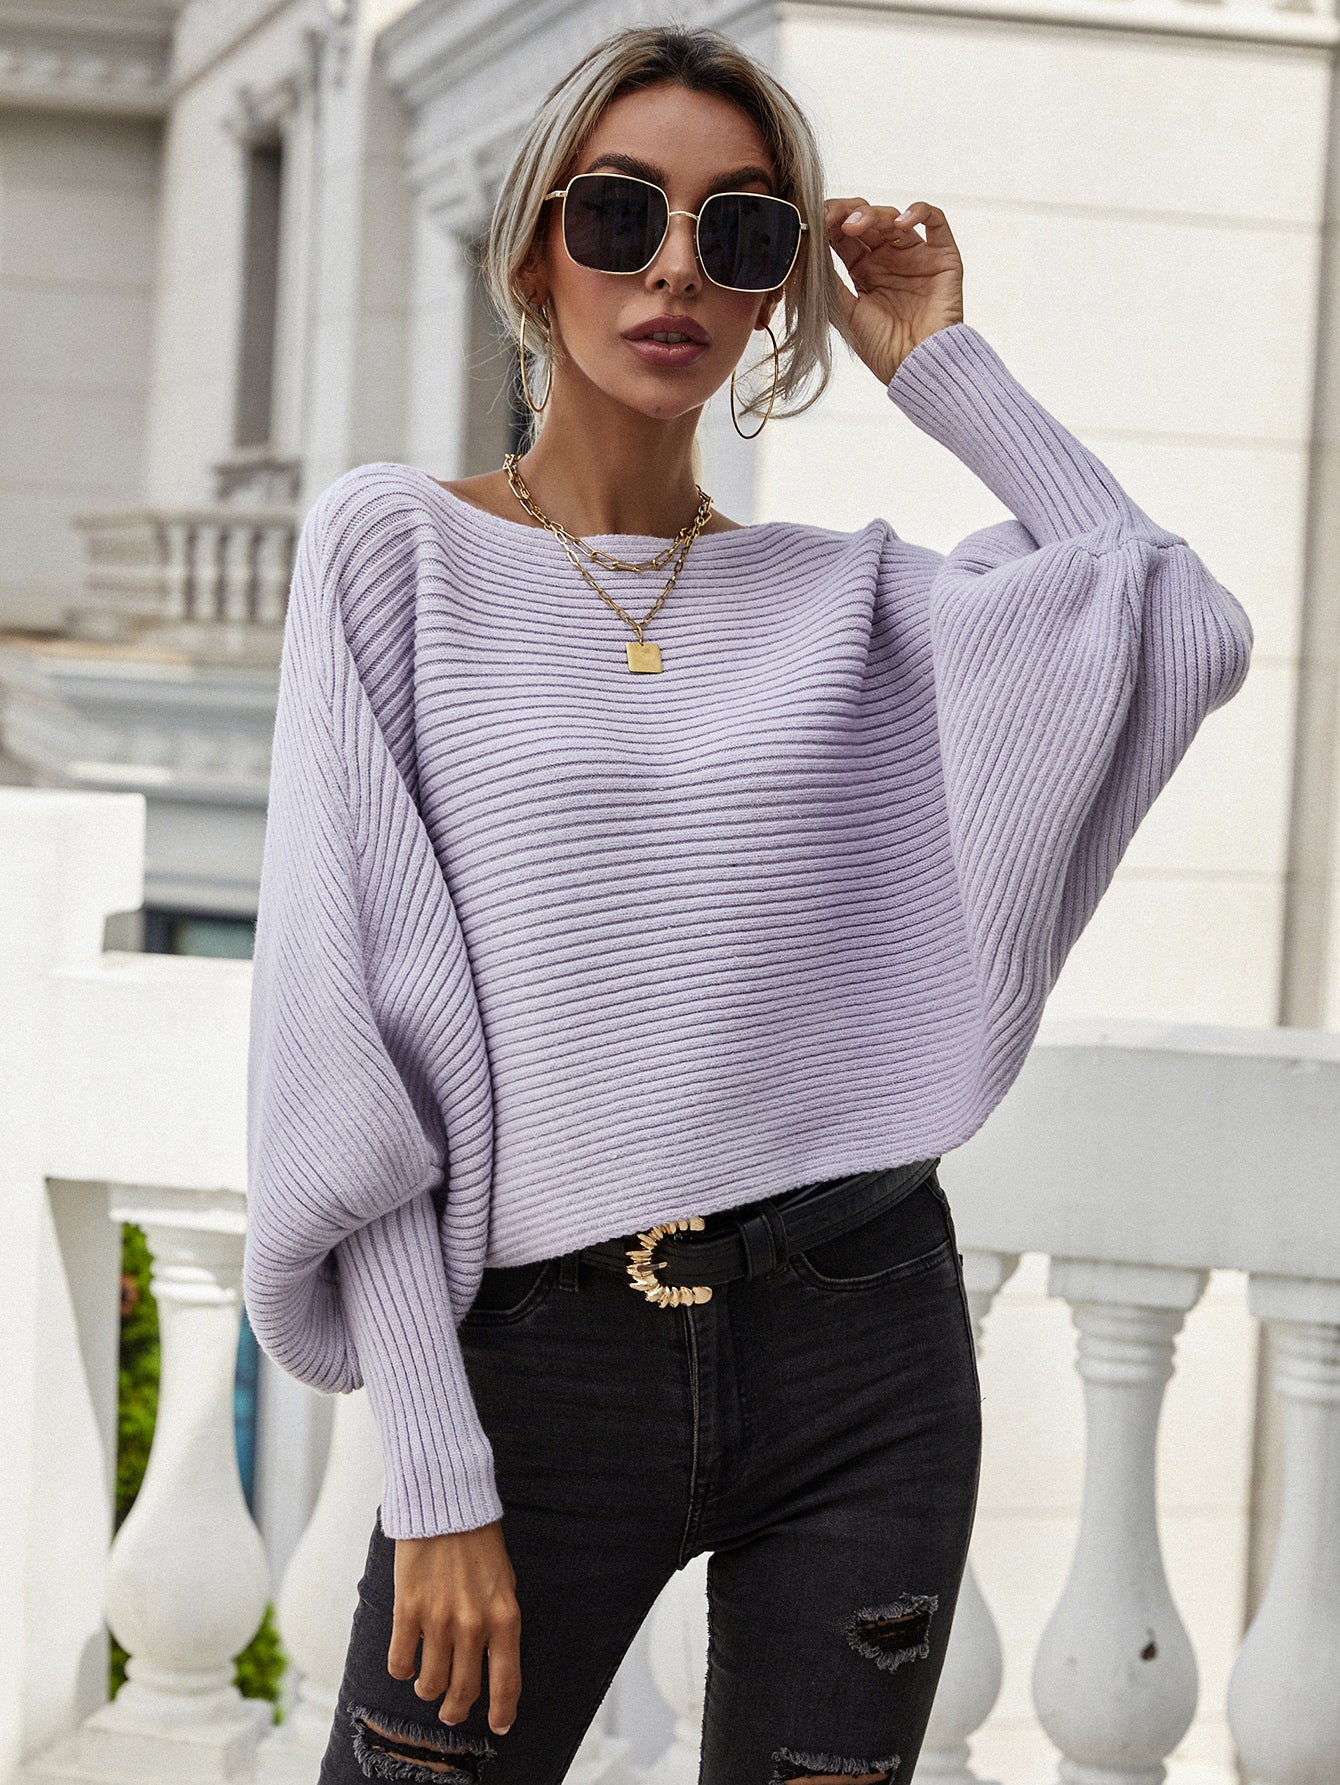 Sloan Sweater